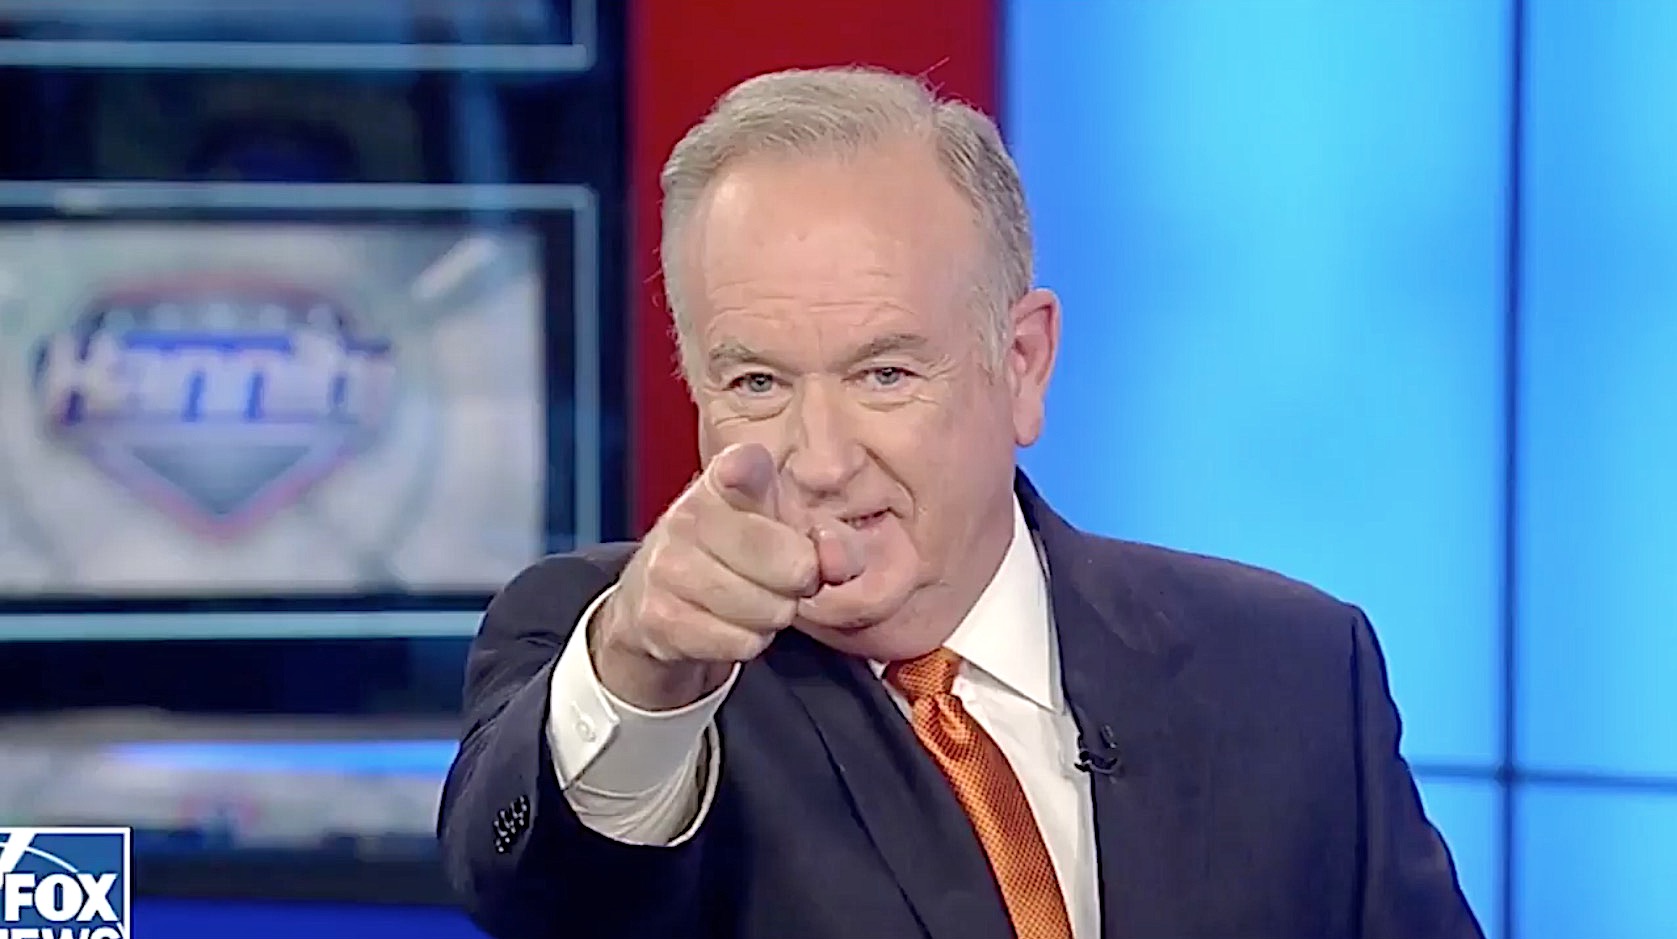 Bill OReilly returns to Fox News